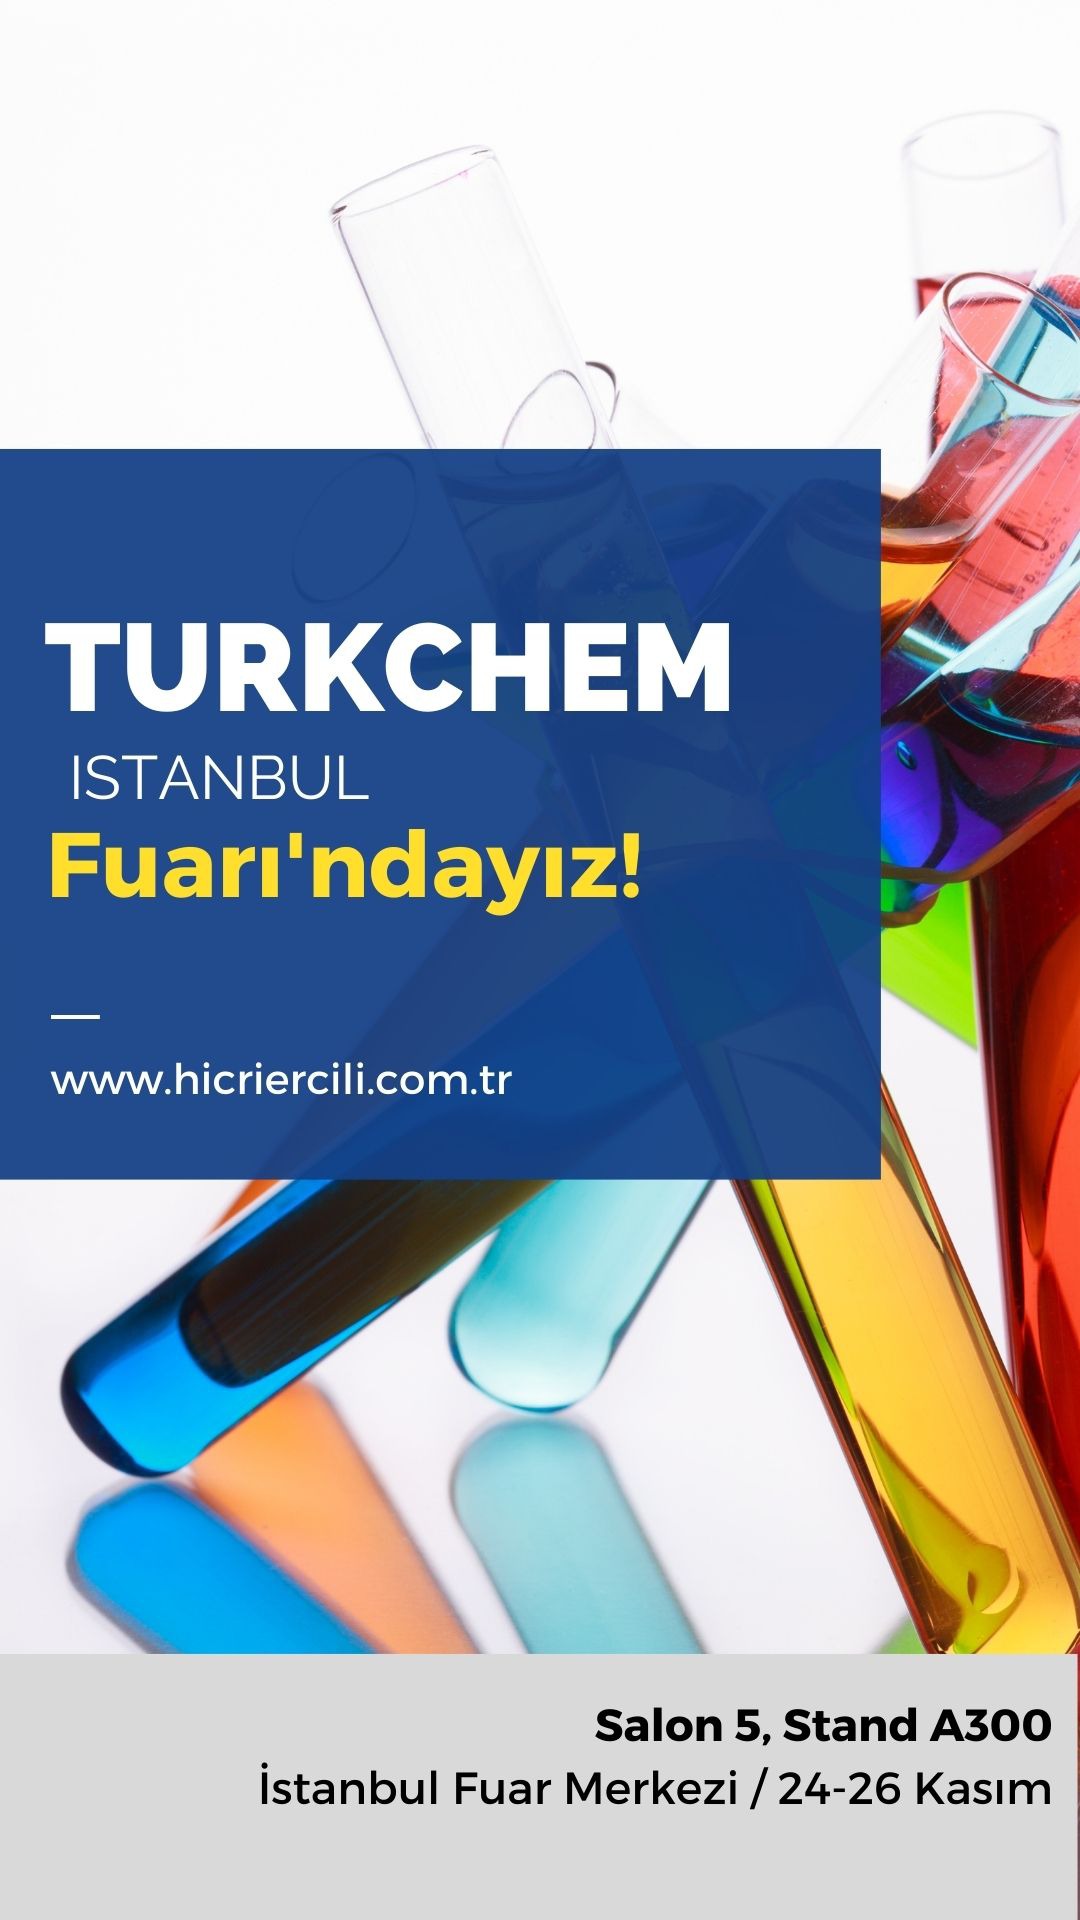 Hicri Ercili TURKCHEM Fuarı'nda!